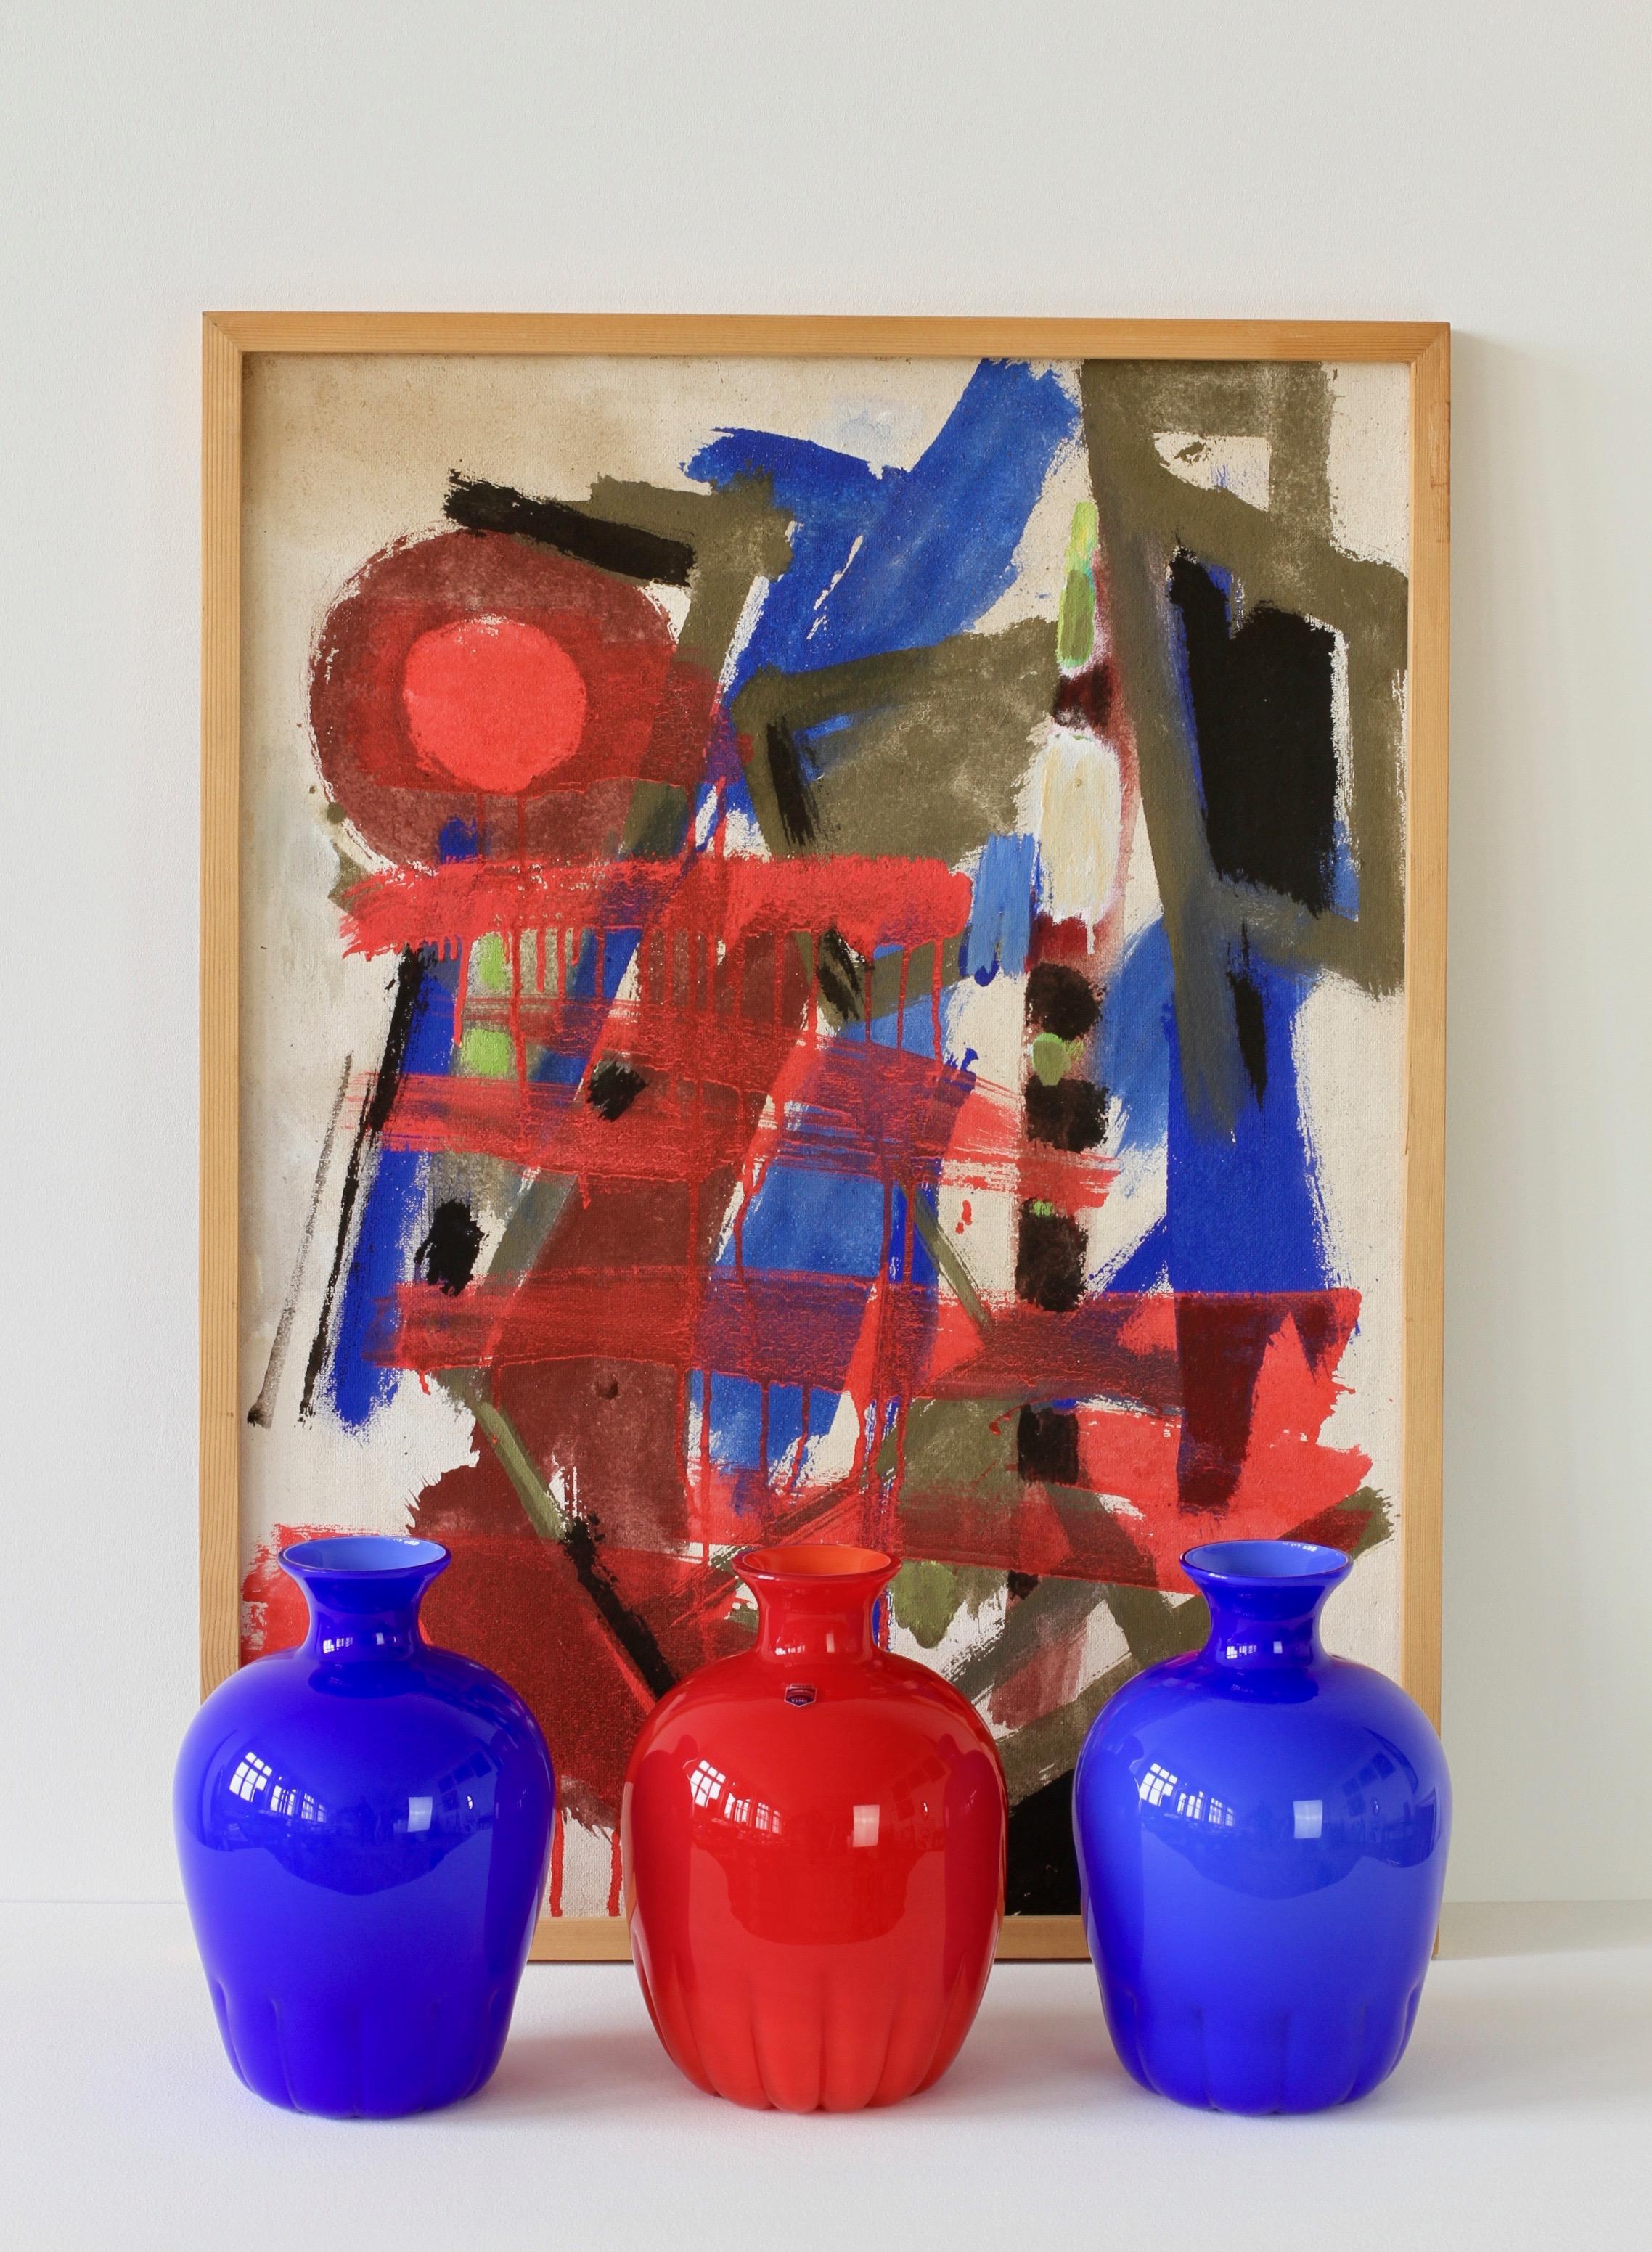 Un merveilleux ensemble de vases en verre de Murano bleu et rouge par Cenedese glass, Italie, vers les années 1990 et une peinture à l'huile moderniste abstraite informelle signée par l'artiste allemand Walter Wohlschlegel (1907-1999). Peint sur du